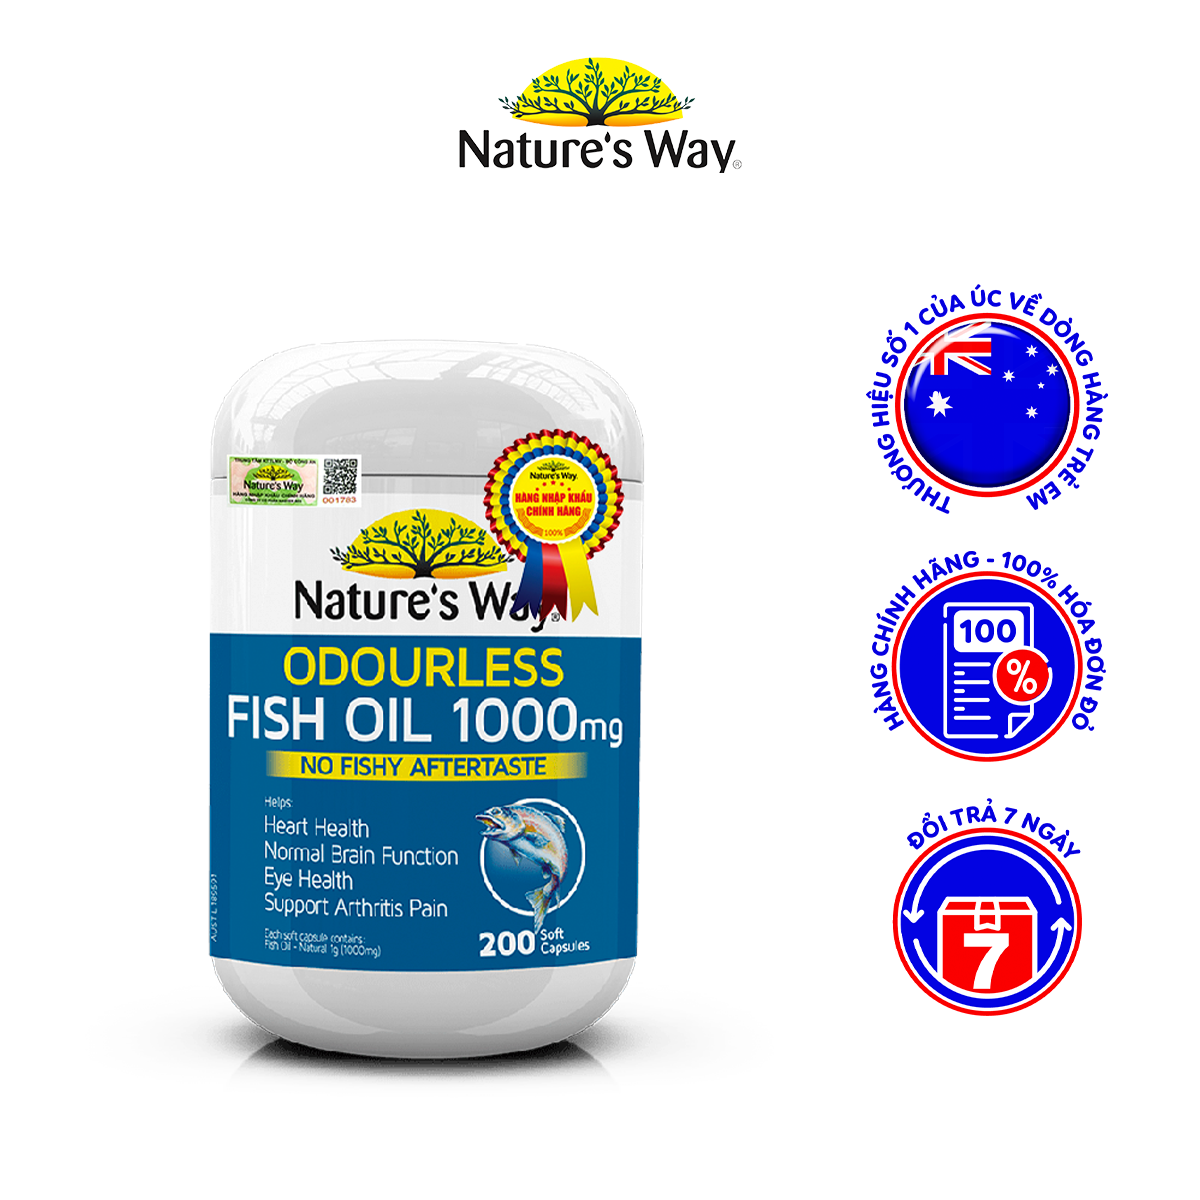 Viên Uống Dầu Cá Nature’s Way Odourless Fish Oil Tăng Cường Sức Khoẻ Tự Nhiên Không Mùi 1000mg 200 Viên